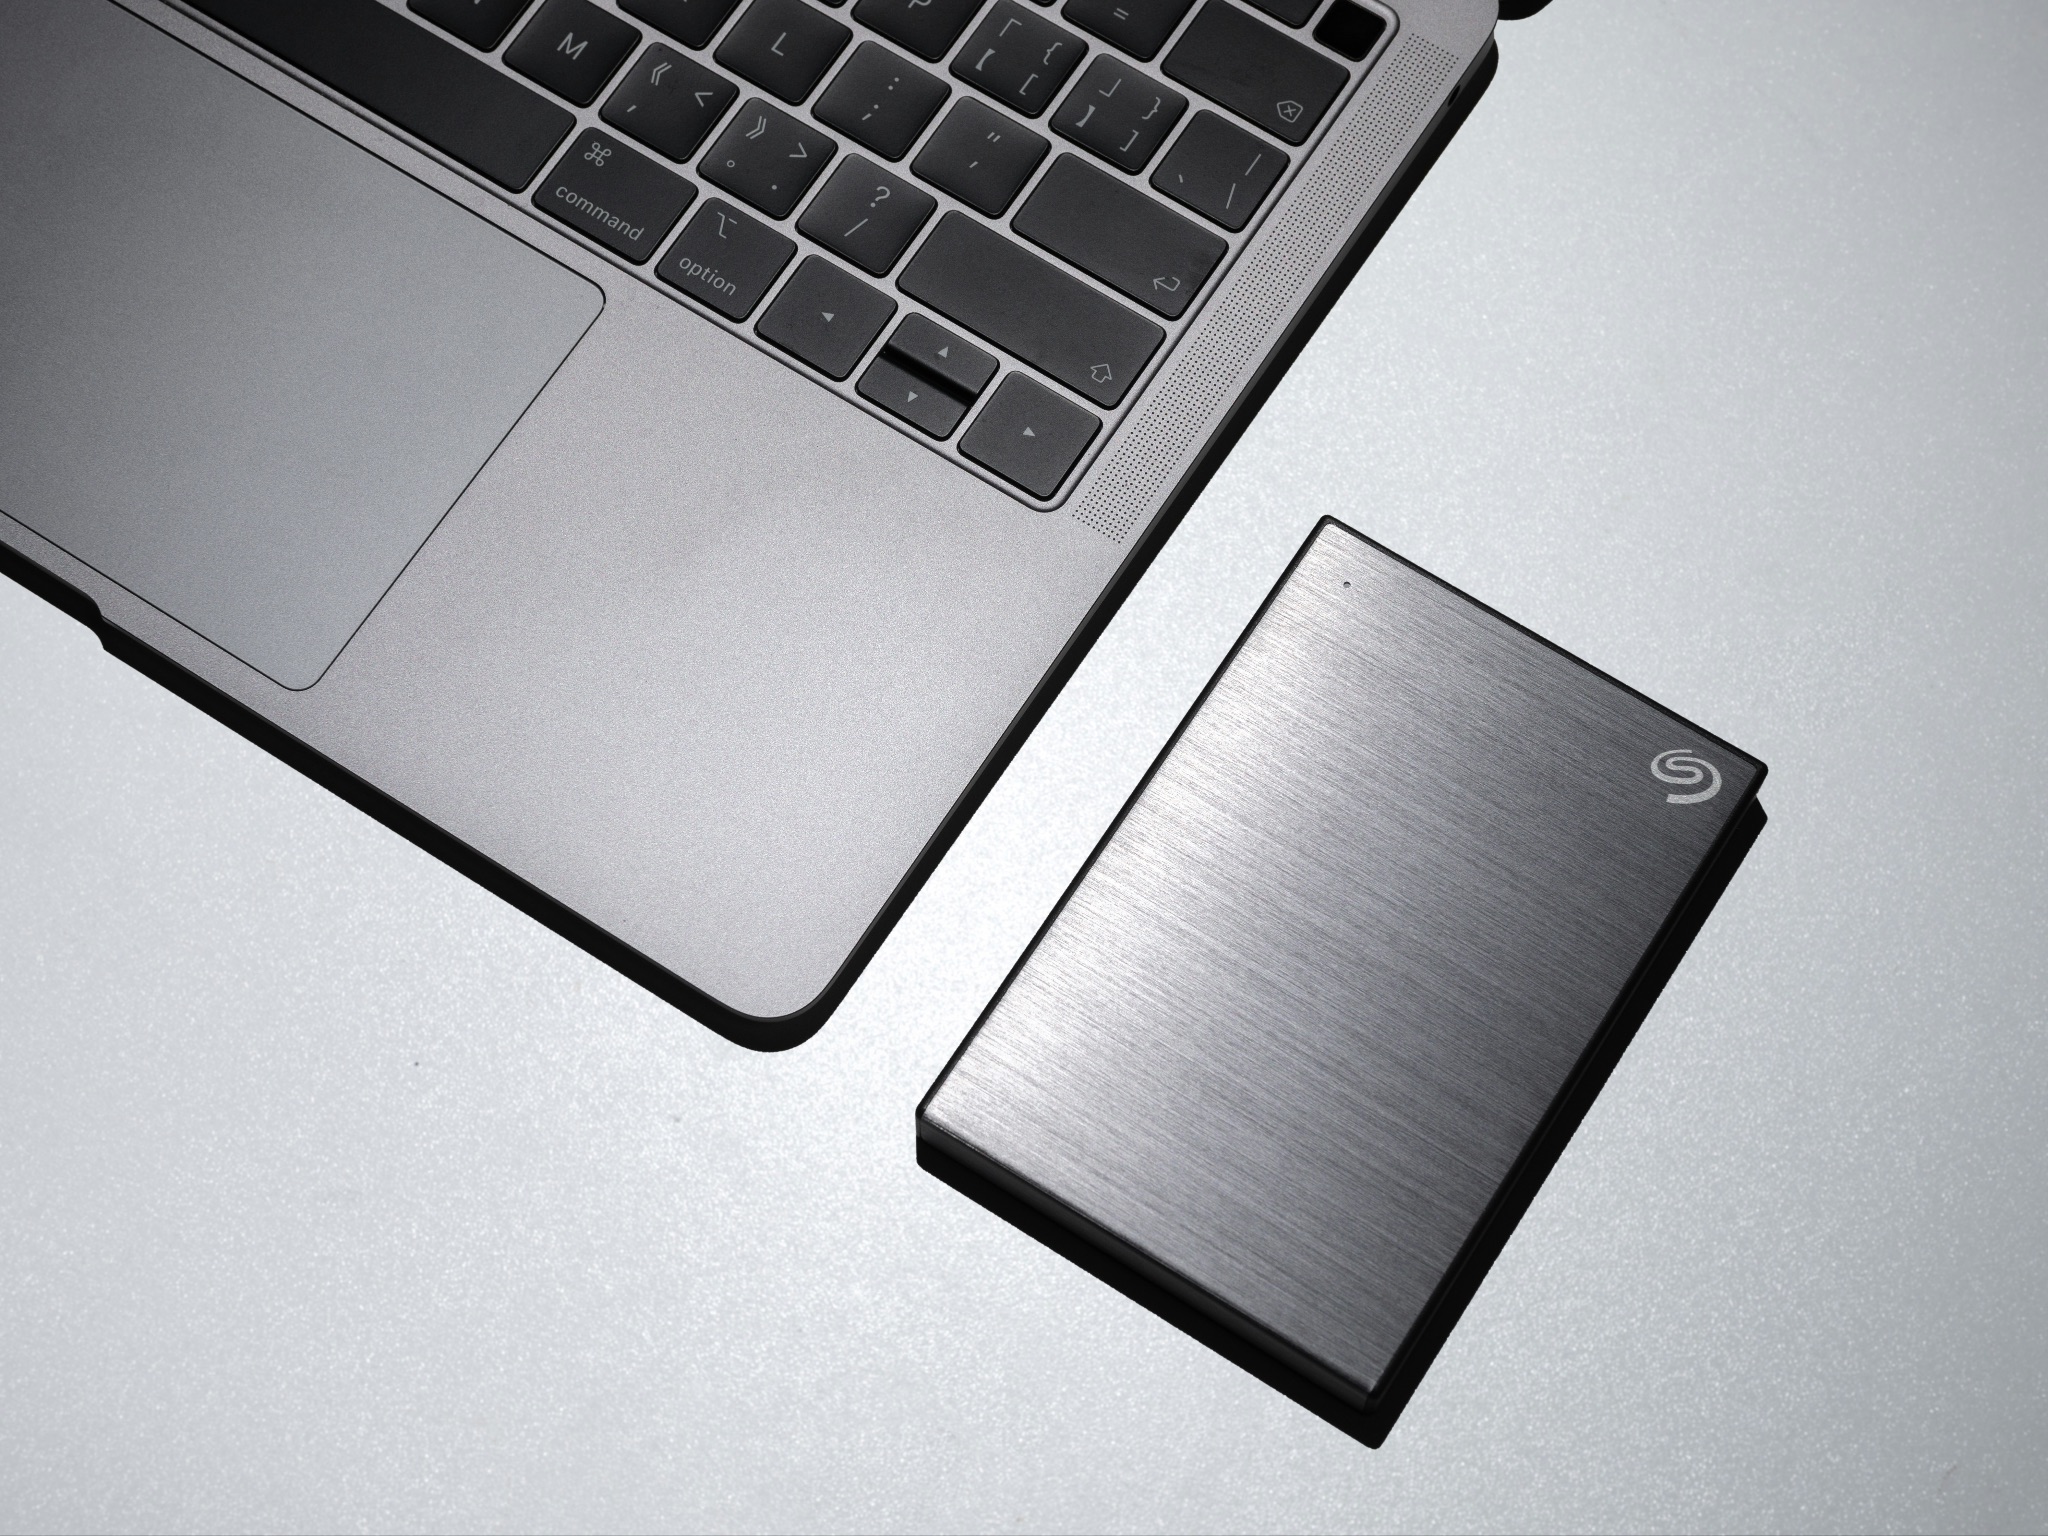 An external hard drive beside an Apple Mac laptop. 